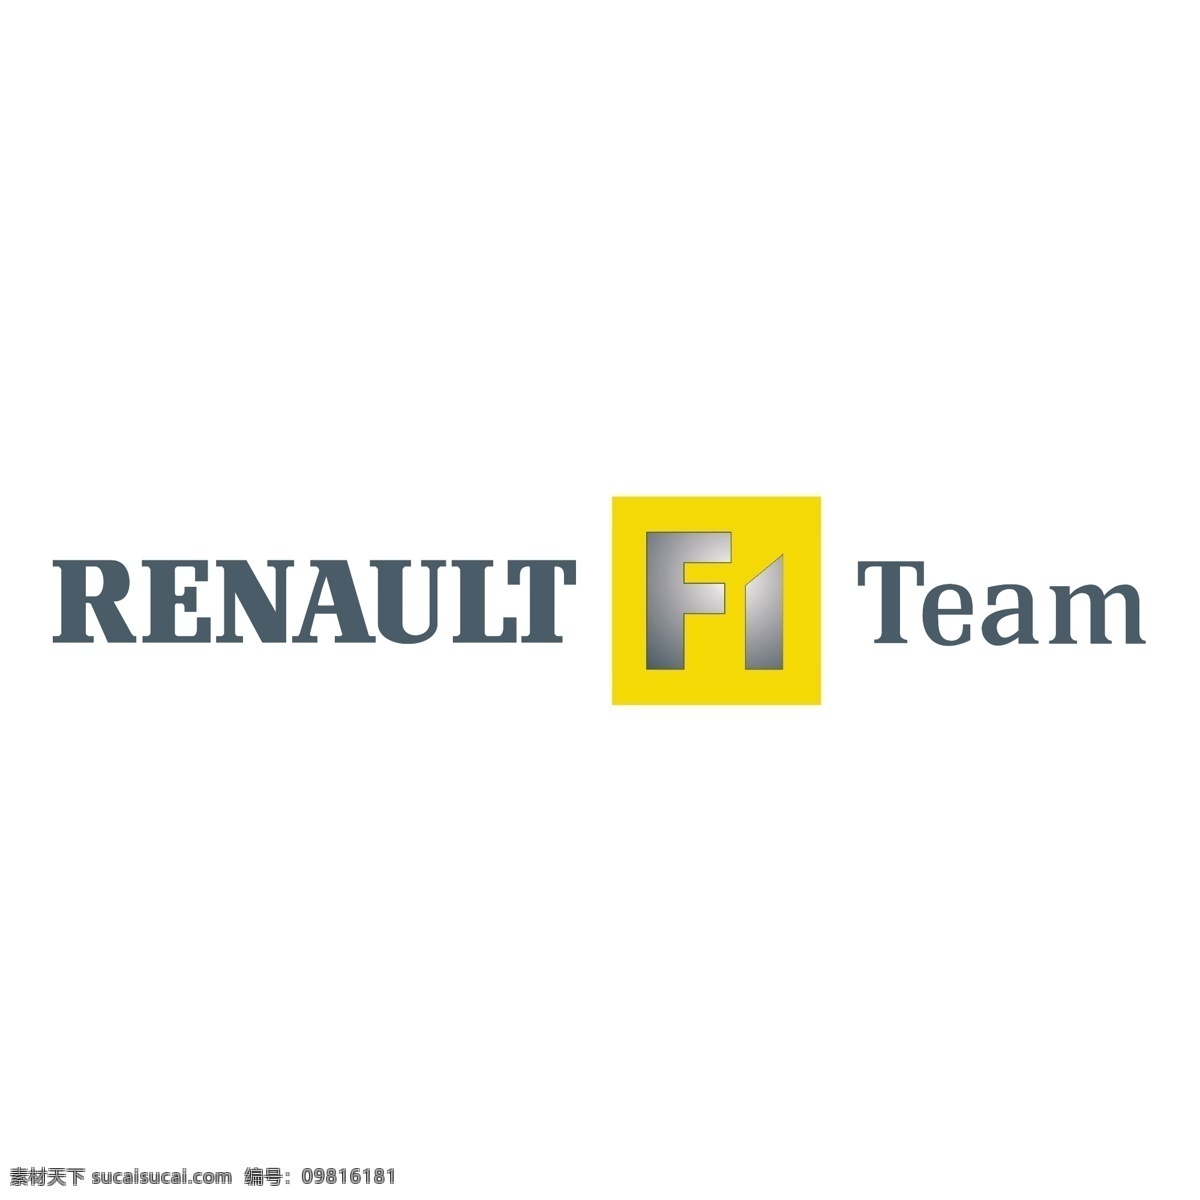 雷诺 f1 车队 免费 标识 psd源文件 logo设计